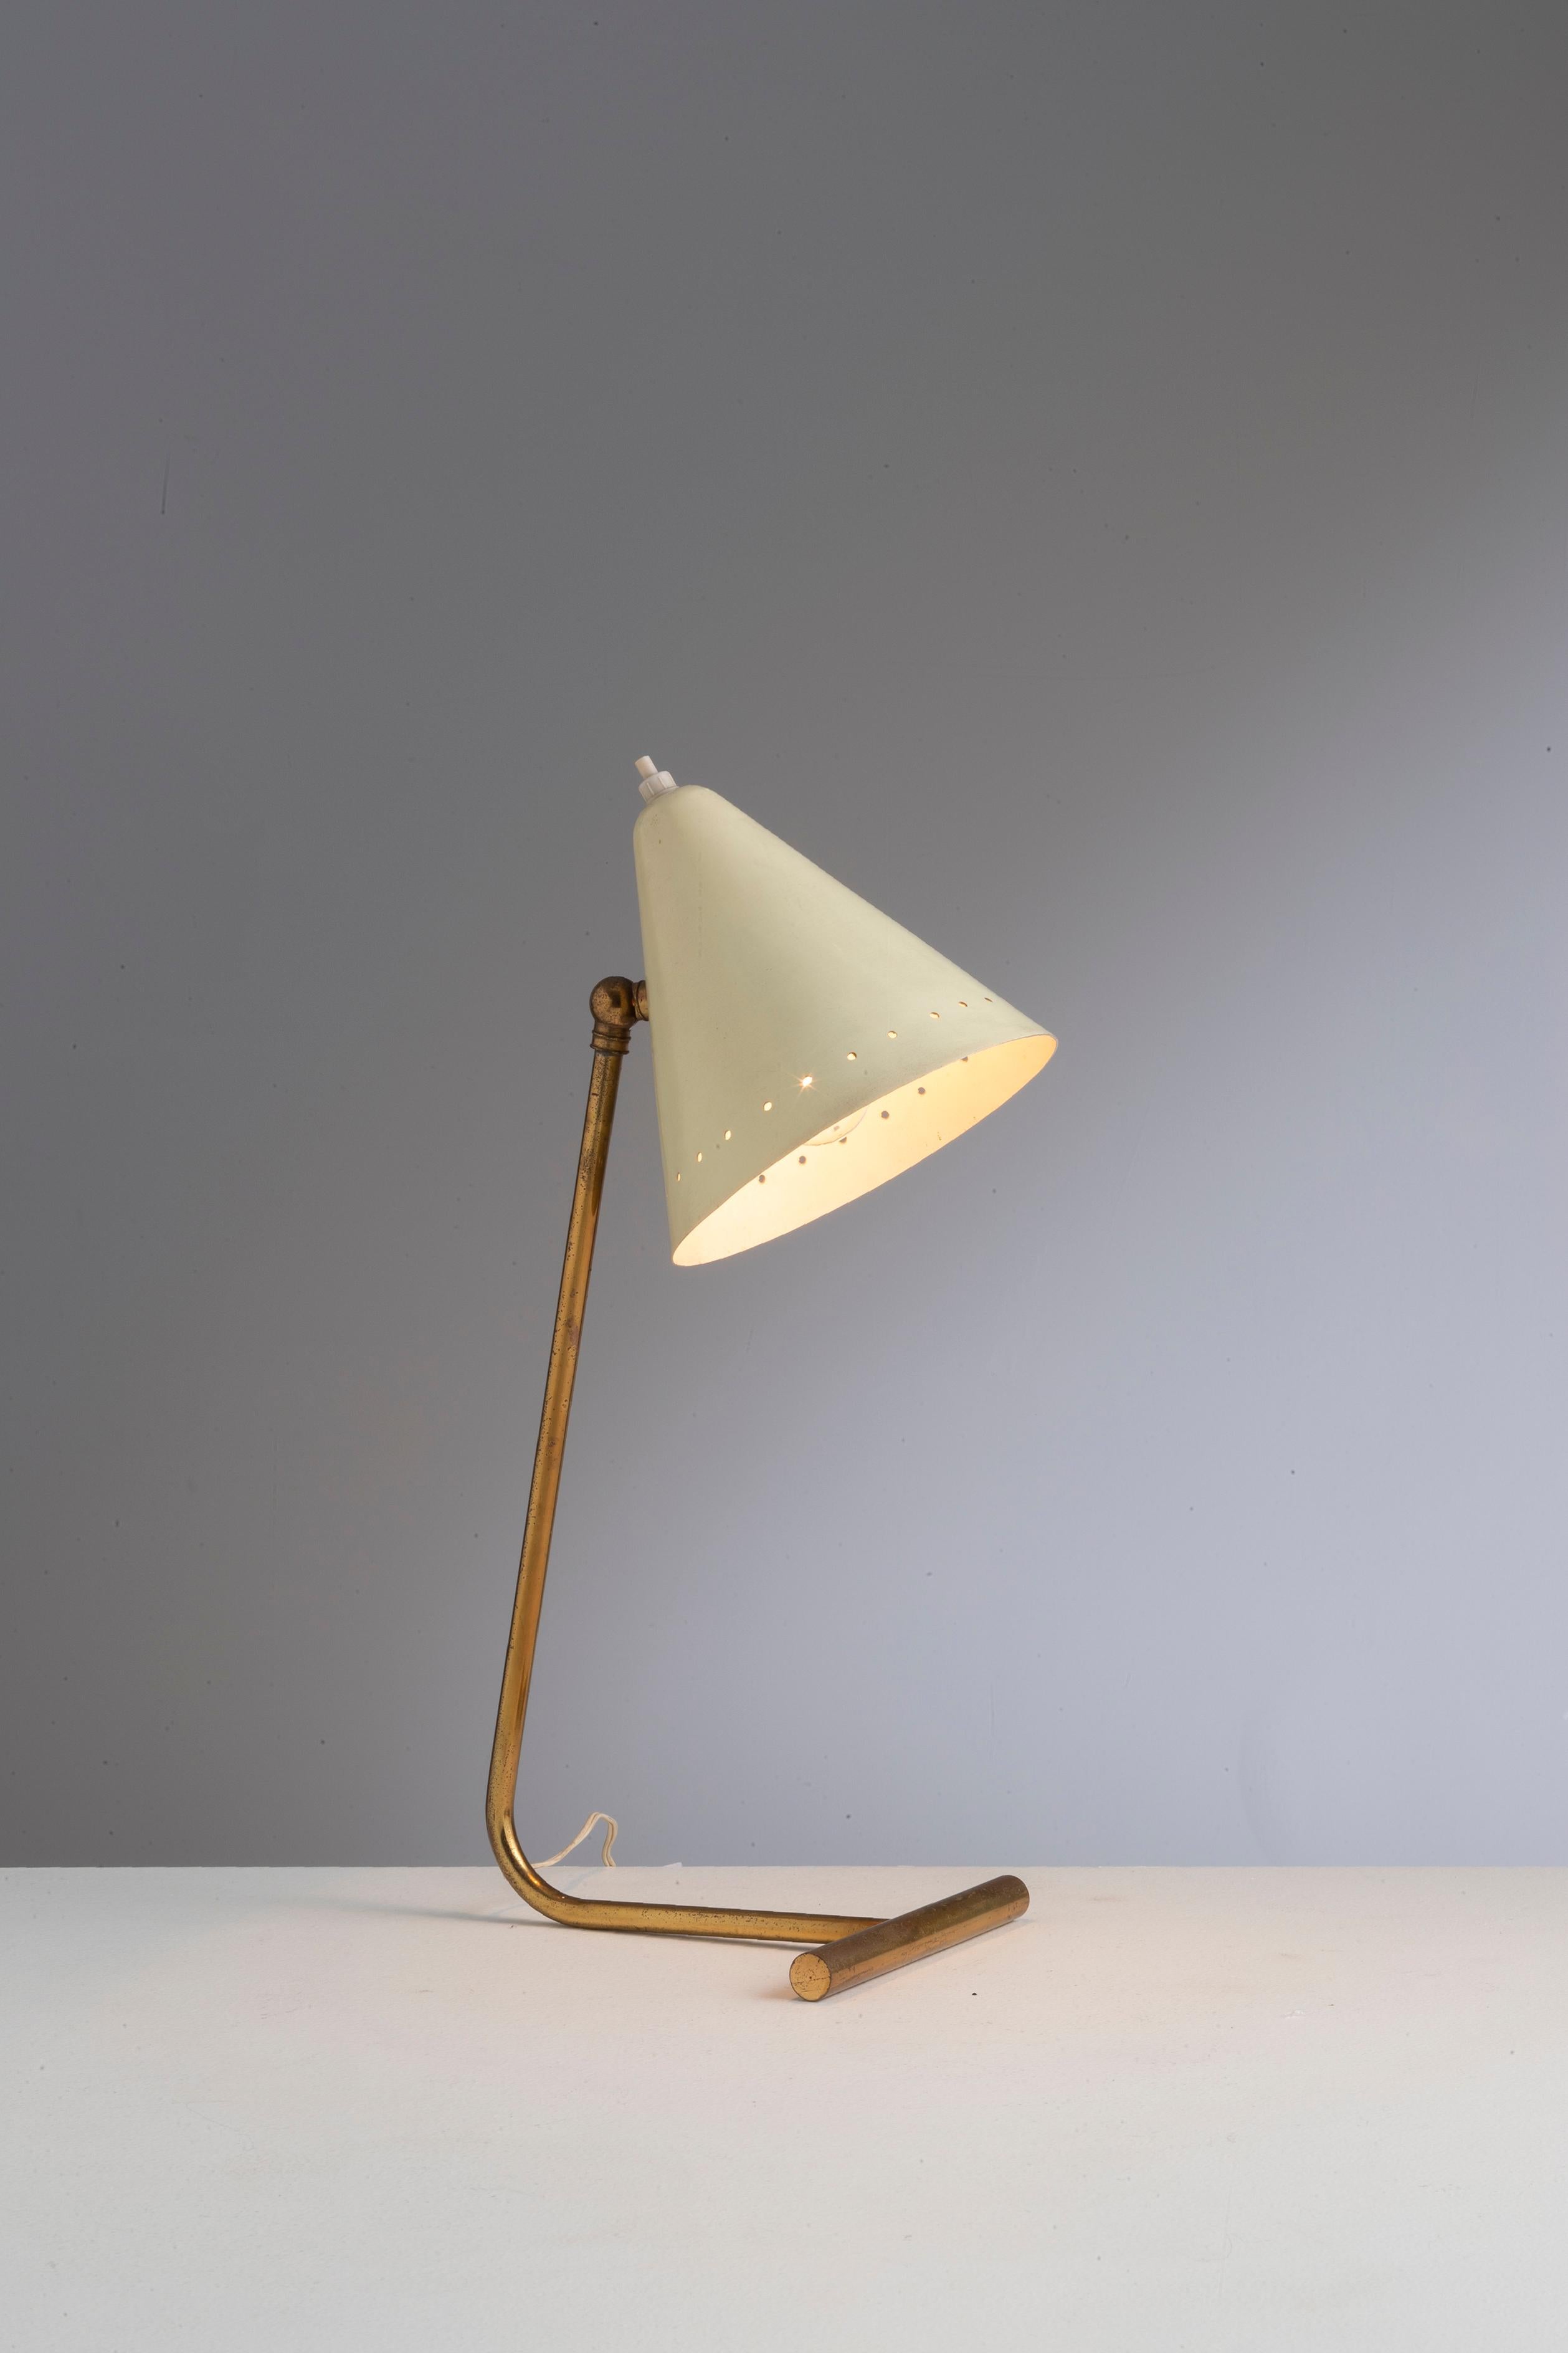 Eine Schreibtischlampe von Gilardi & Barzaghi um 1955

Sockel aus vergoldetem Messingrohr und cremefarben lackierter Schirm.

Zustand: Die ursprüngliche Vergoldung ist zu einer schönen Gesamtpatina abgerieben und der Schirm wurde mit